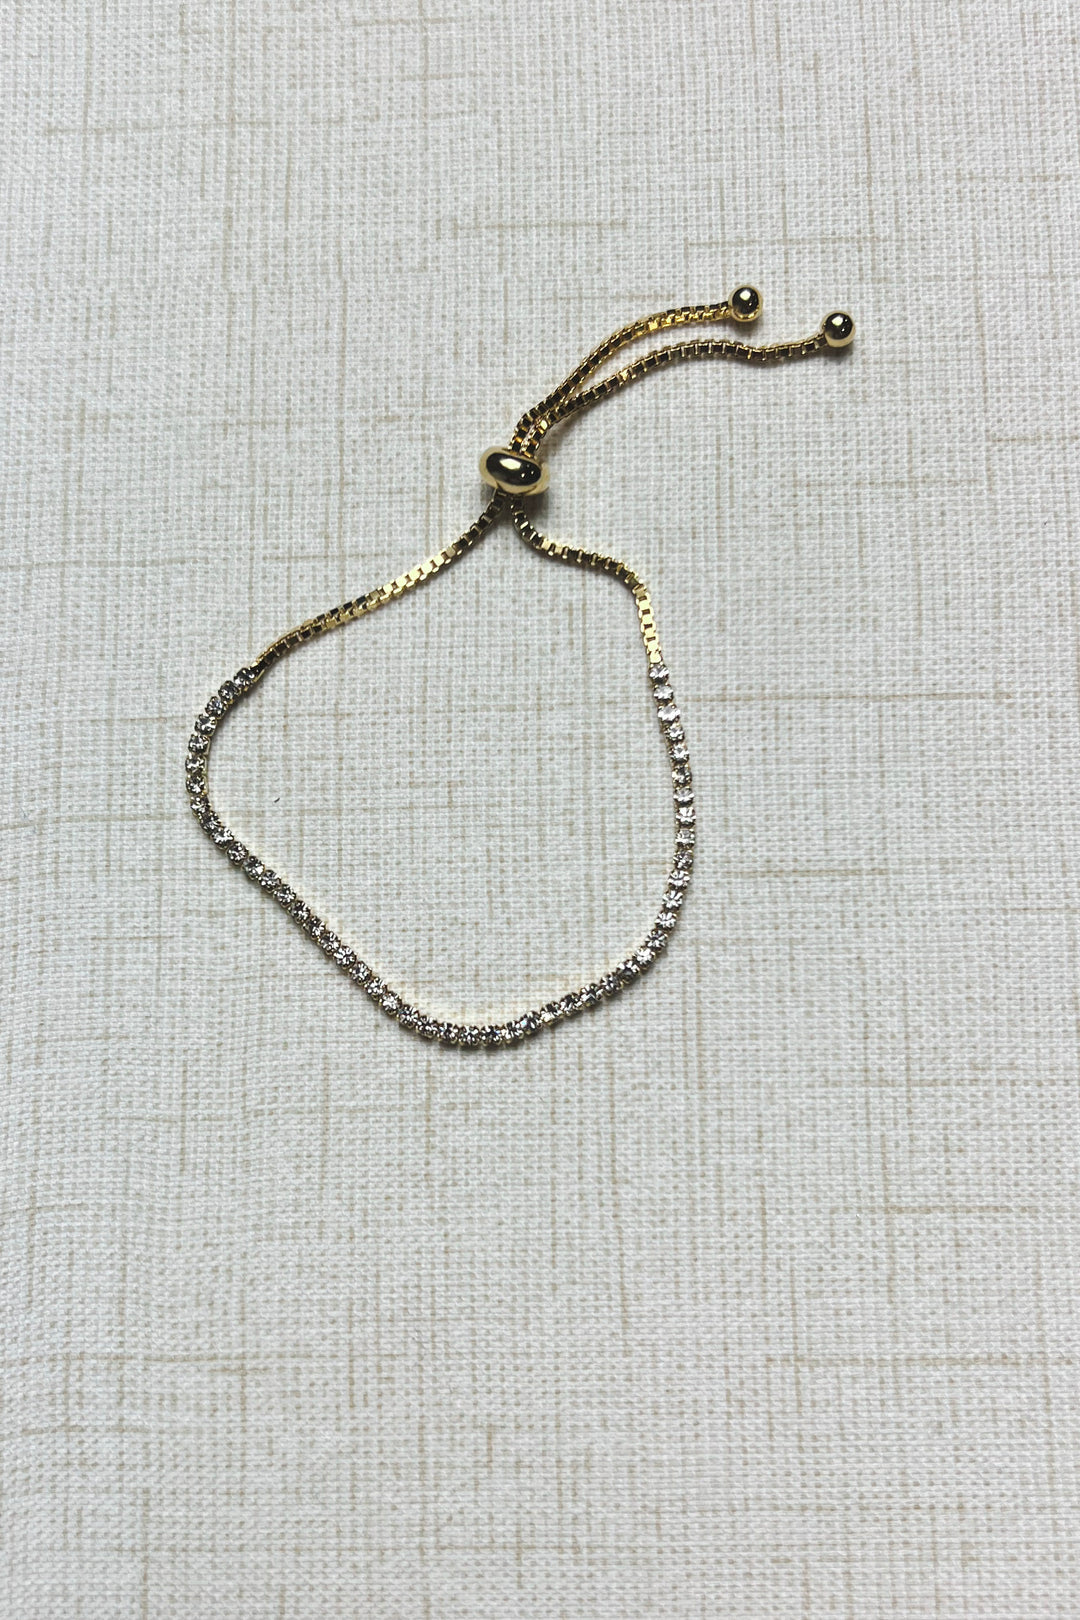 Rhinestone Adjustable Bracelet